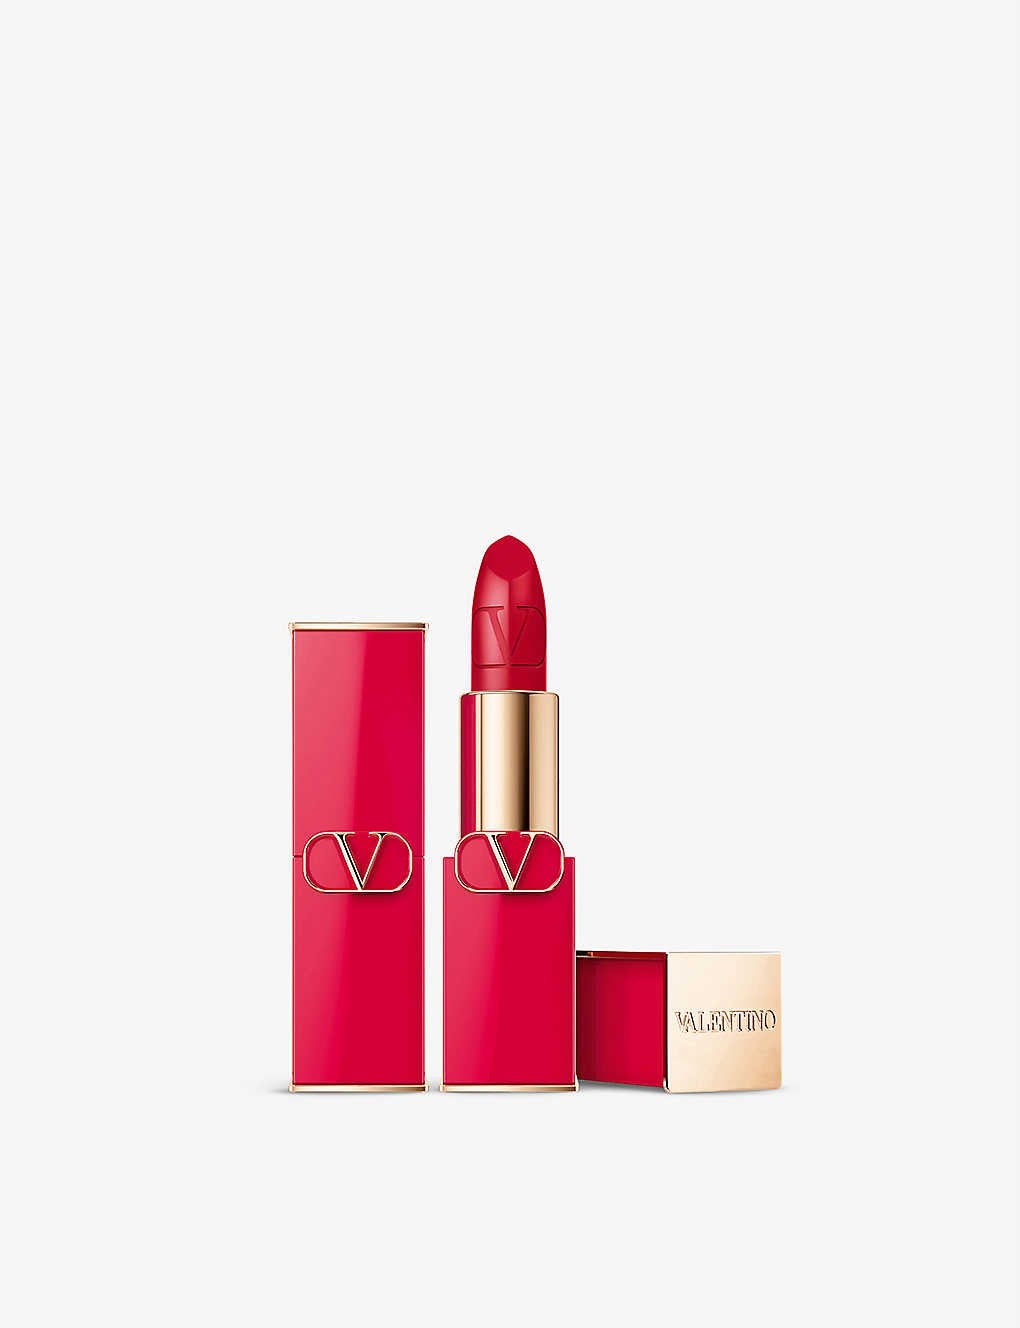 Valentino Beauty + Rosso Valentino Satin Refillable Lipstick